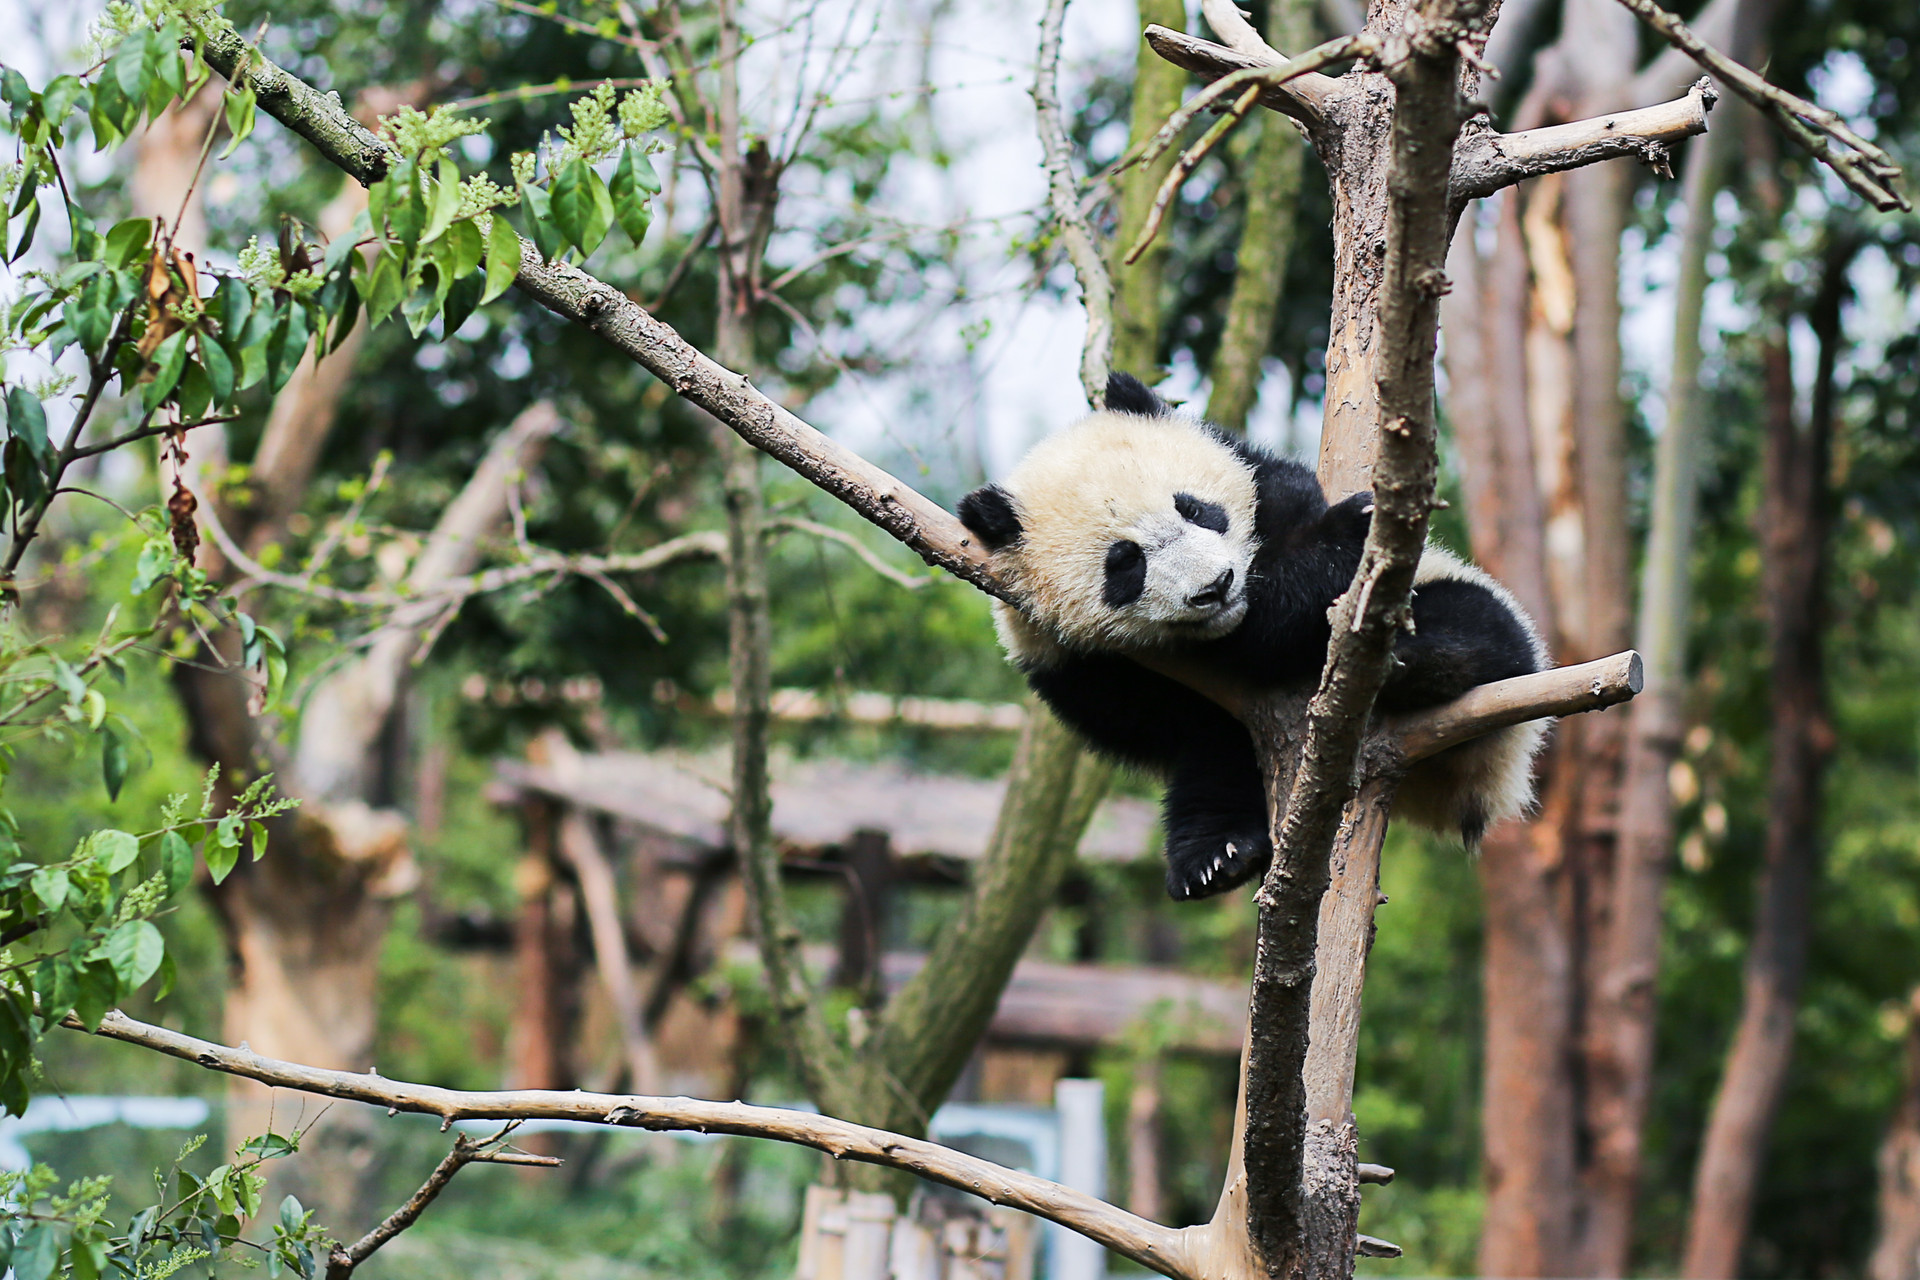 卧龙基地游客偷摸大熊猫惹众怒 辩称是熊猫宝宝沿围栏爬上去